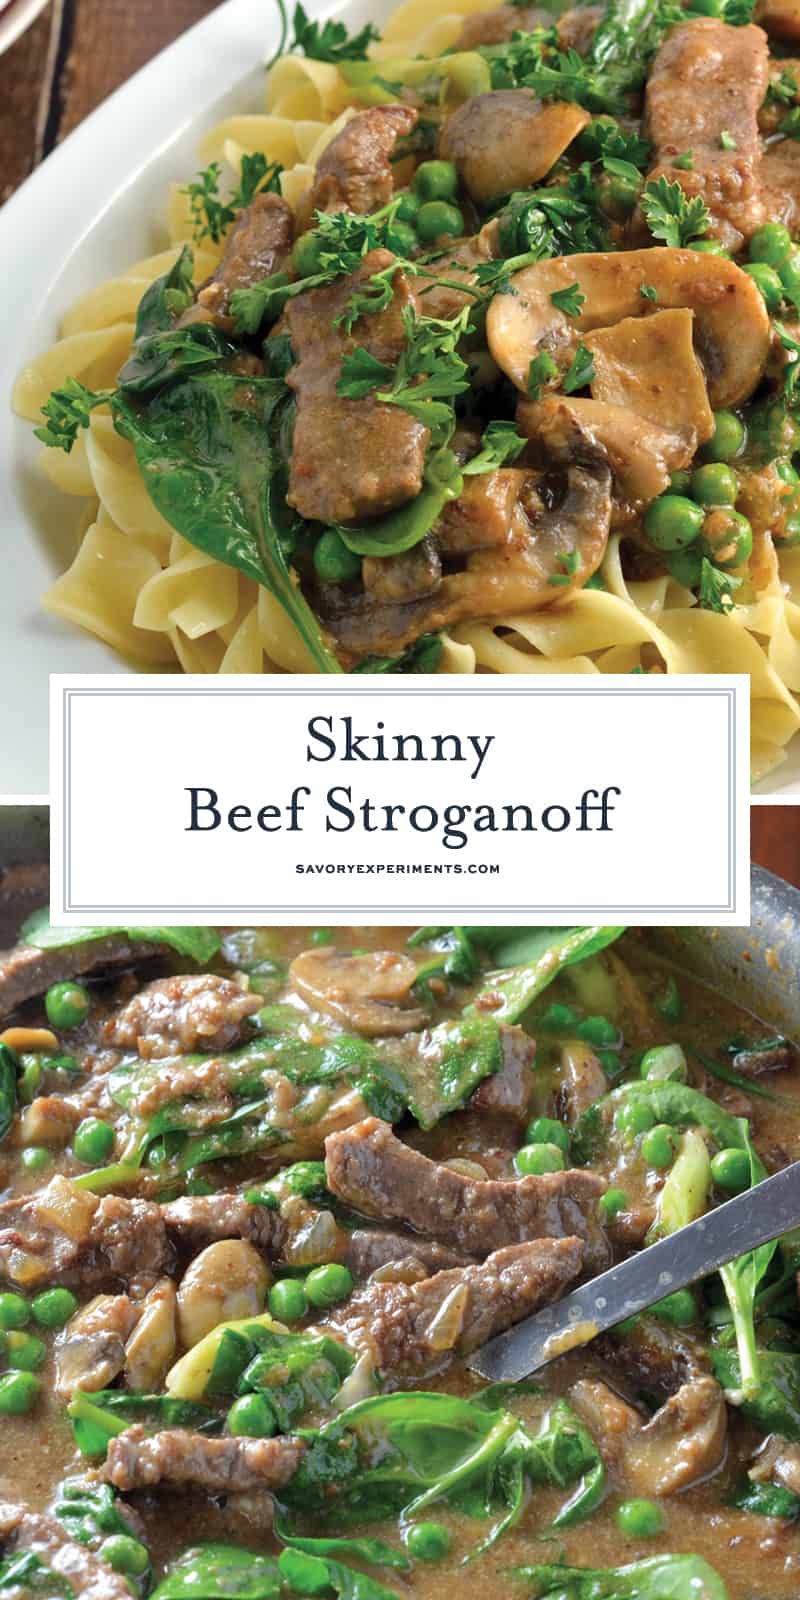 Skinny wołowina Stroganoff użyj tajnego składnika, aby to zrobić w niskokaloryczne kremowe danie. Dodaj groszek i szpinak na dodatkowe warzywo! # patrzfstroganoff www.savoryexperiments.com 